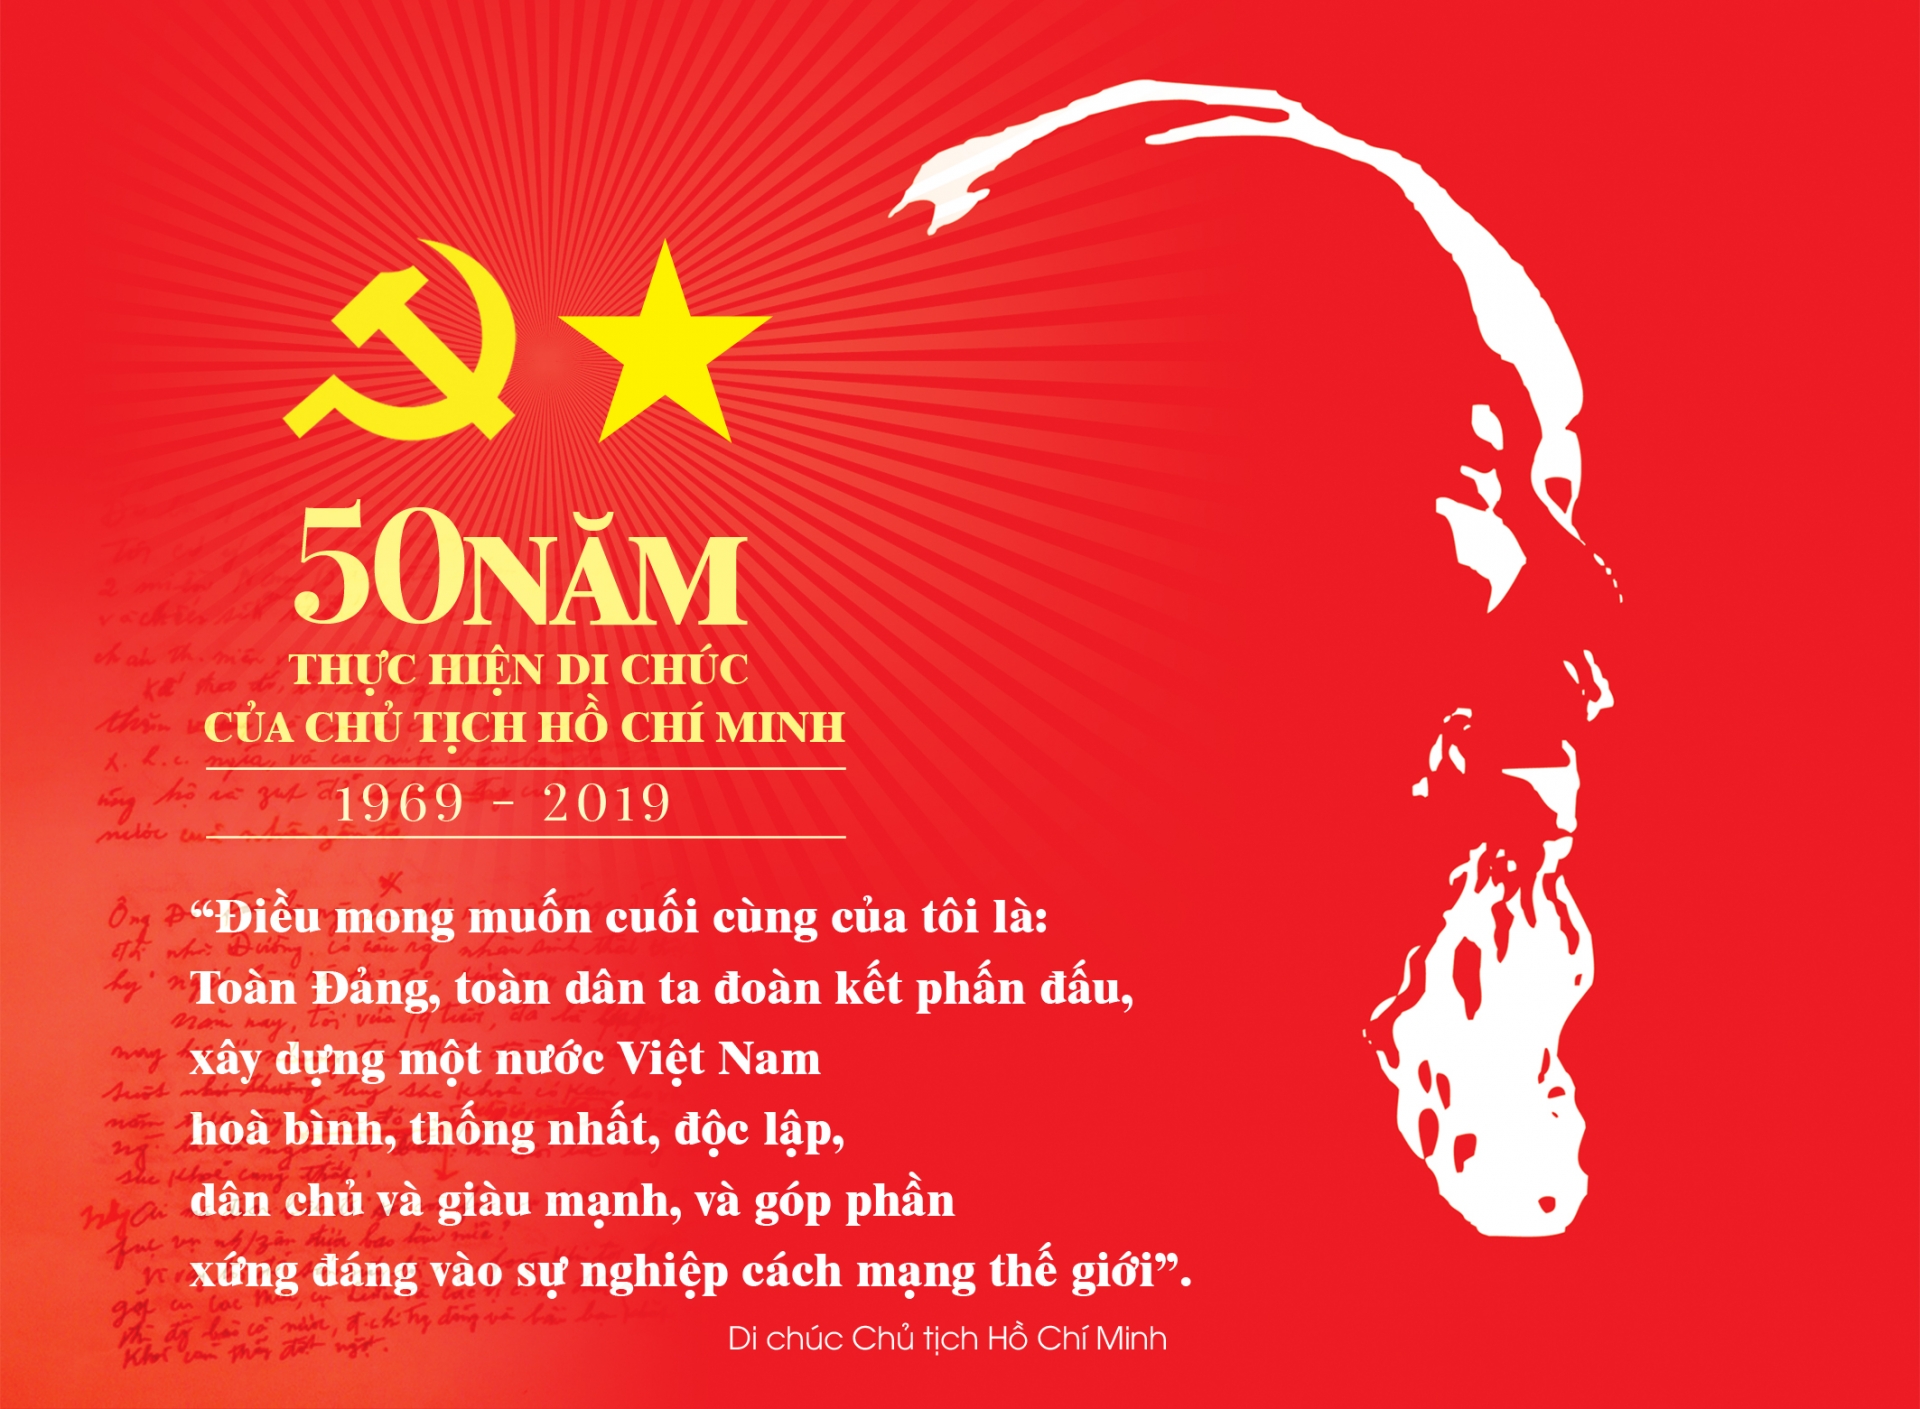 Thực hiện Di chúc Chủ tịch Hồ Chí Minh, mỗi cán bộ, đảng viên phải ra sức phát huy vai trò tiền phong gương mẫu, nâng cao đạo đức cách mạng, kiên quyết chống chủ nghĩa cá nhân